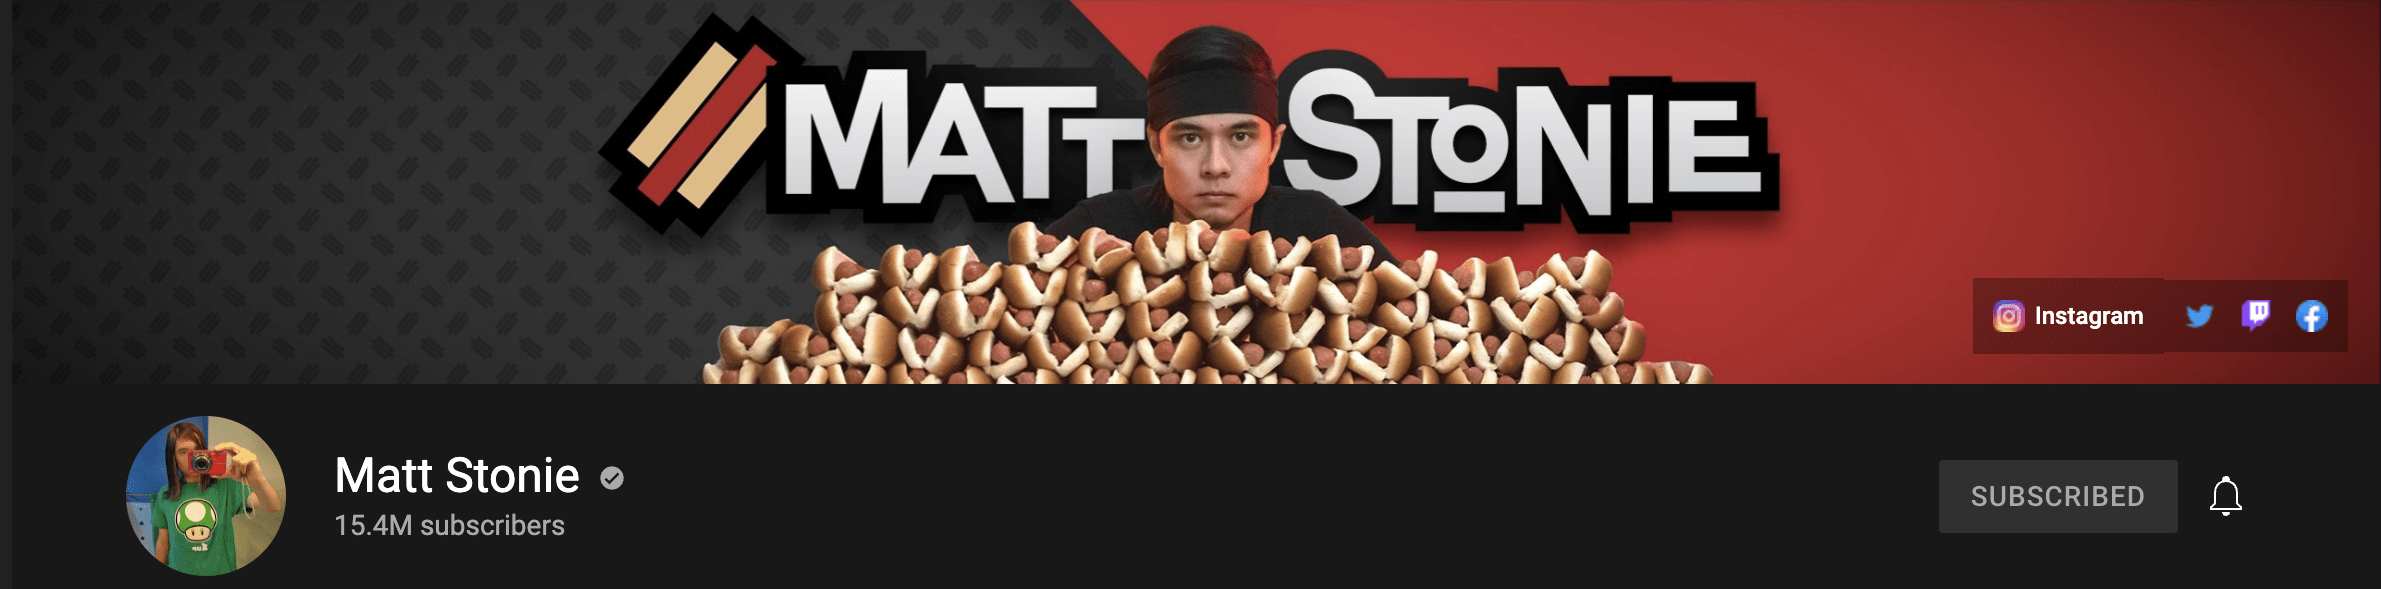 Matt Stonie Youtube cover